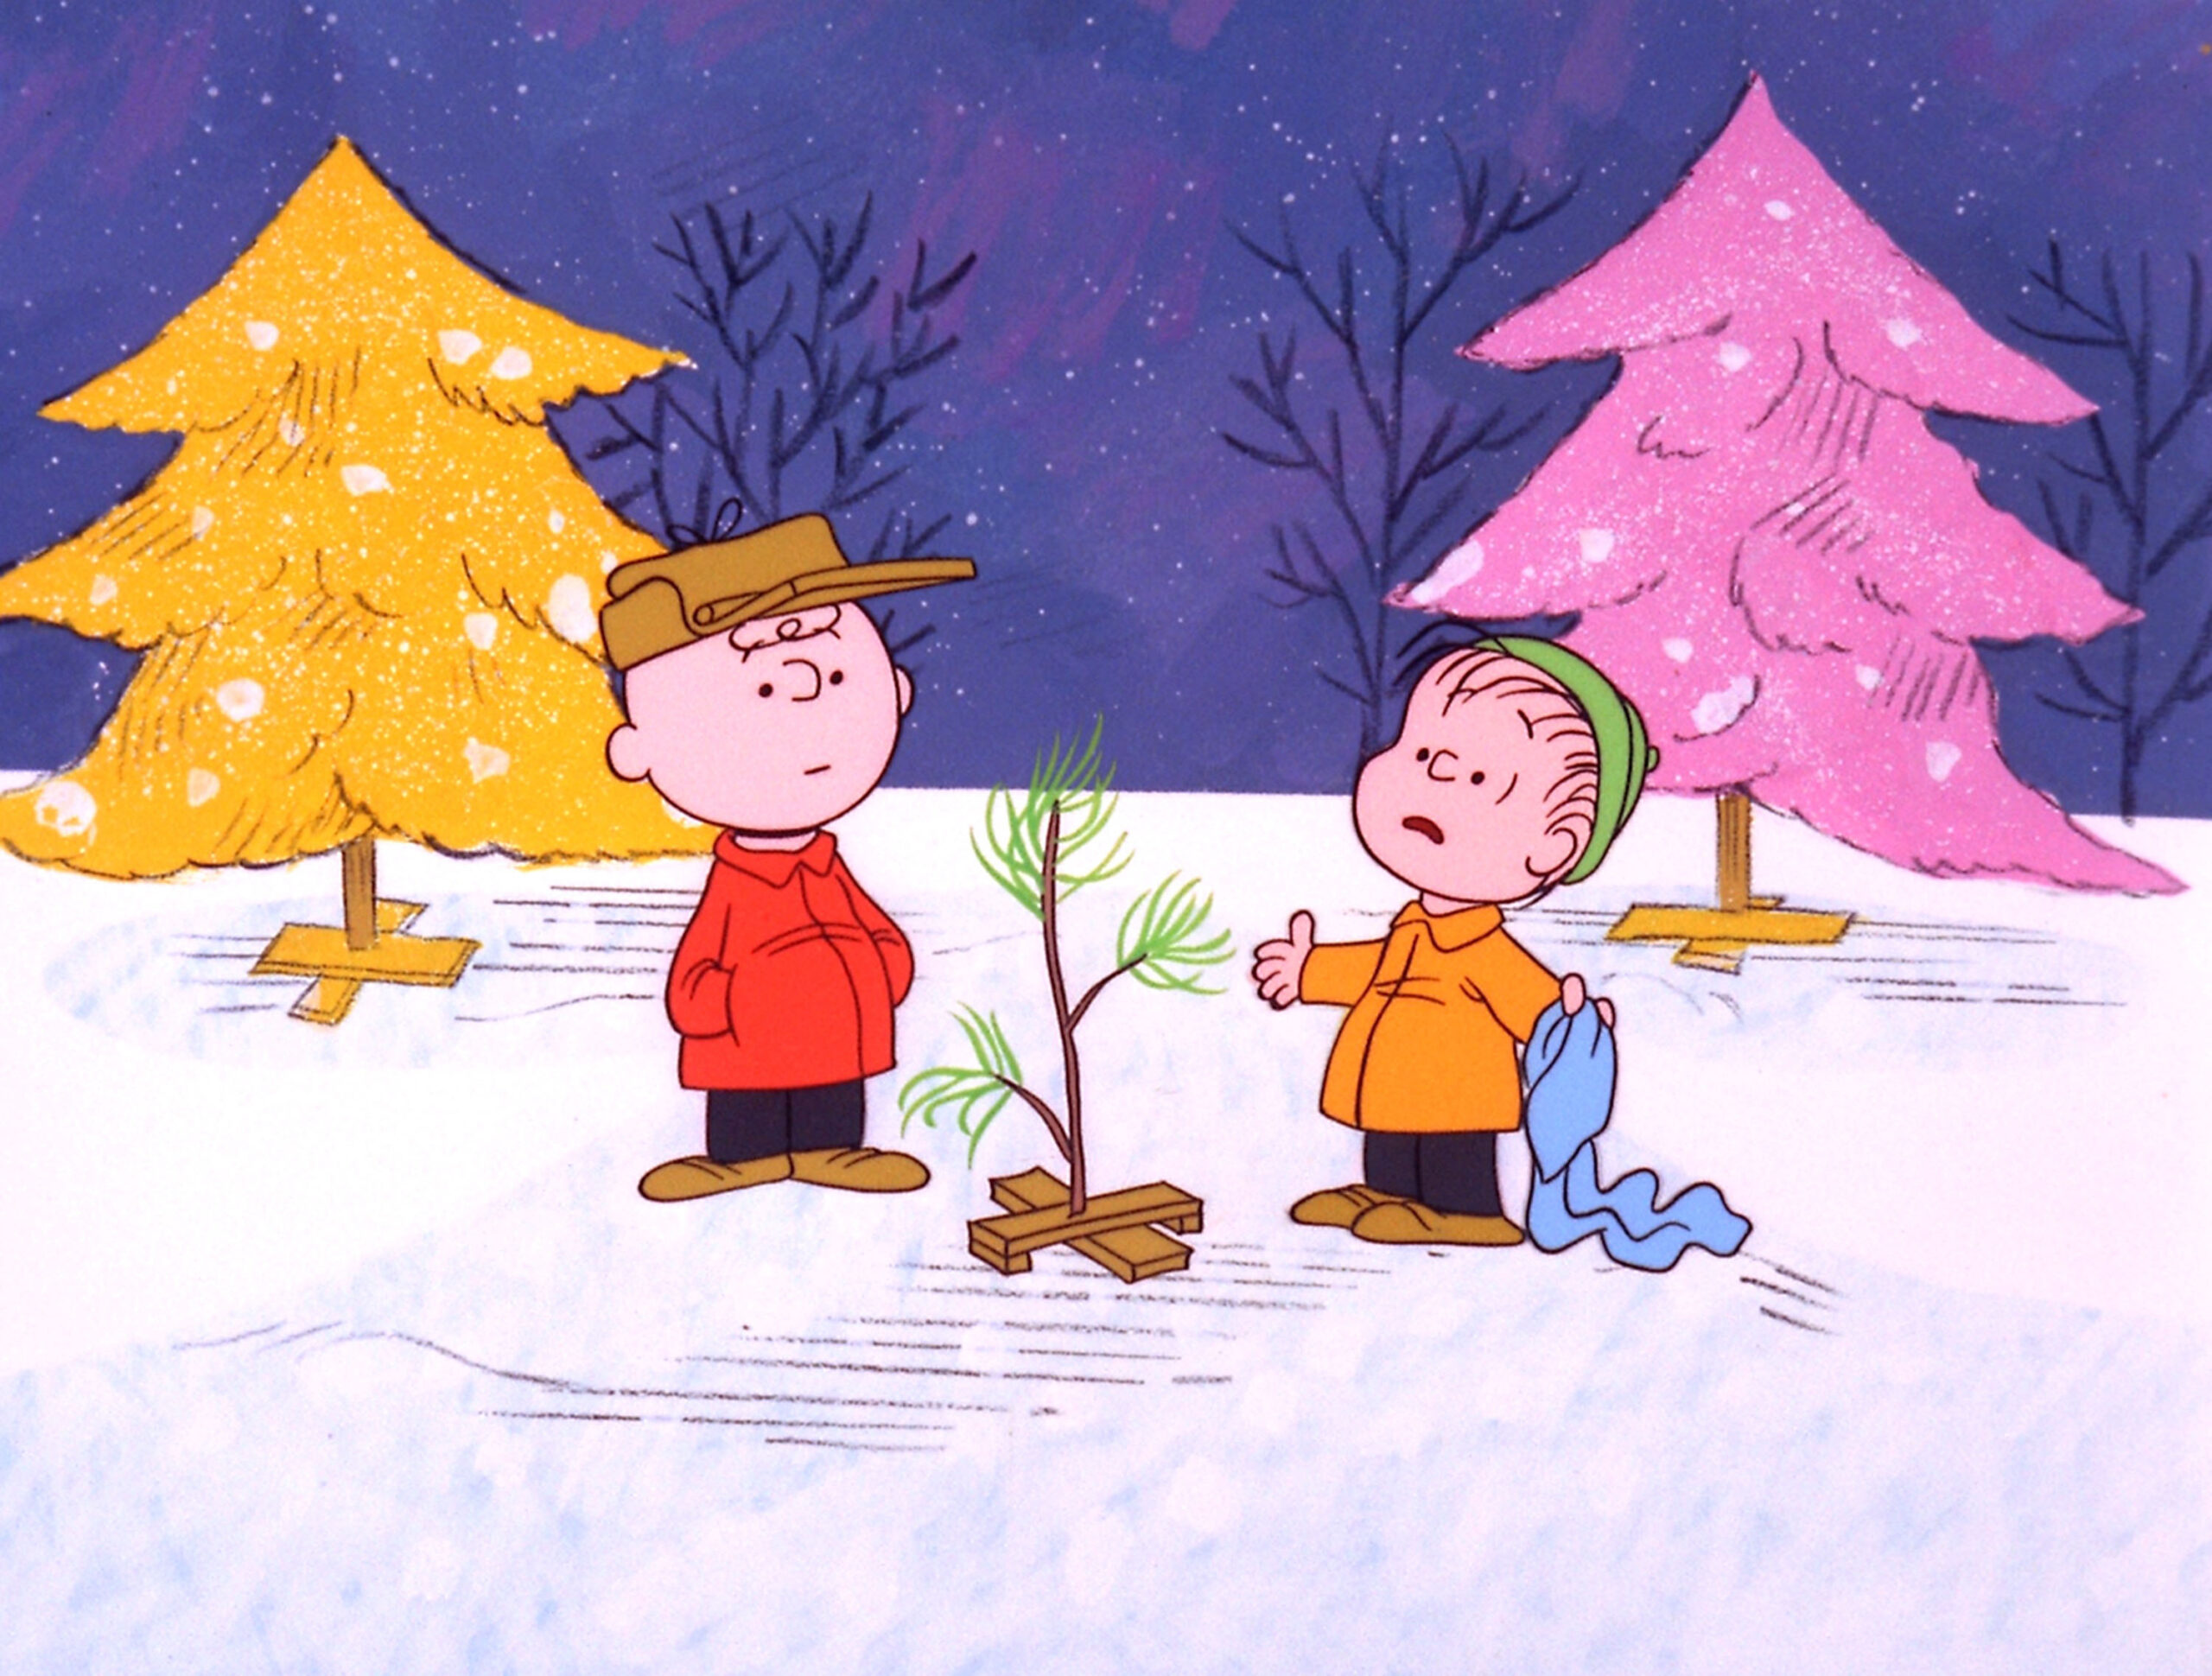 "A Charlie Brown Christmas"